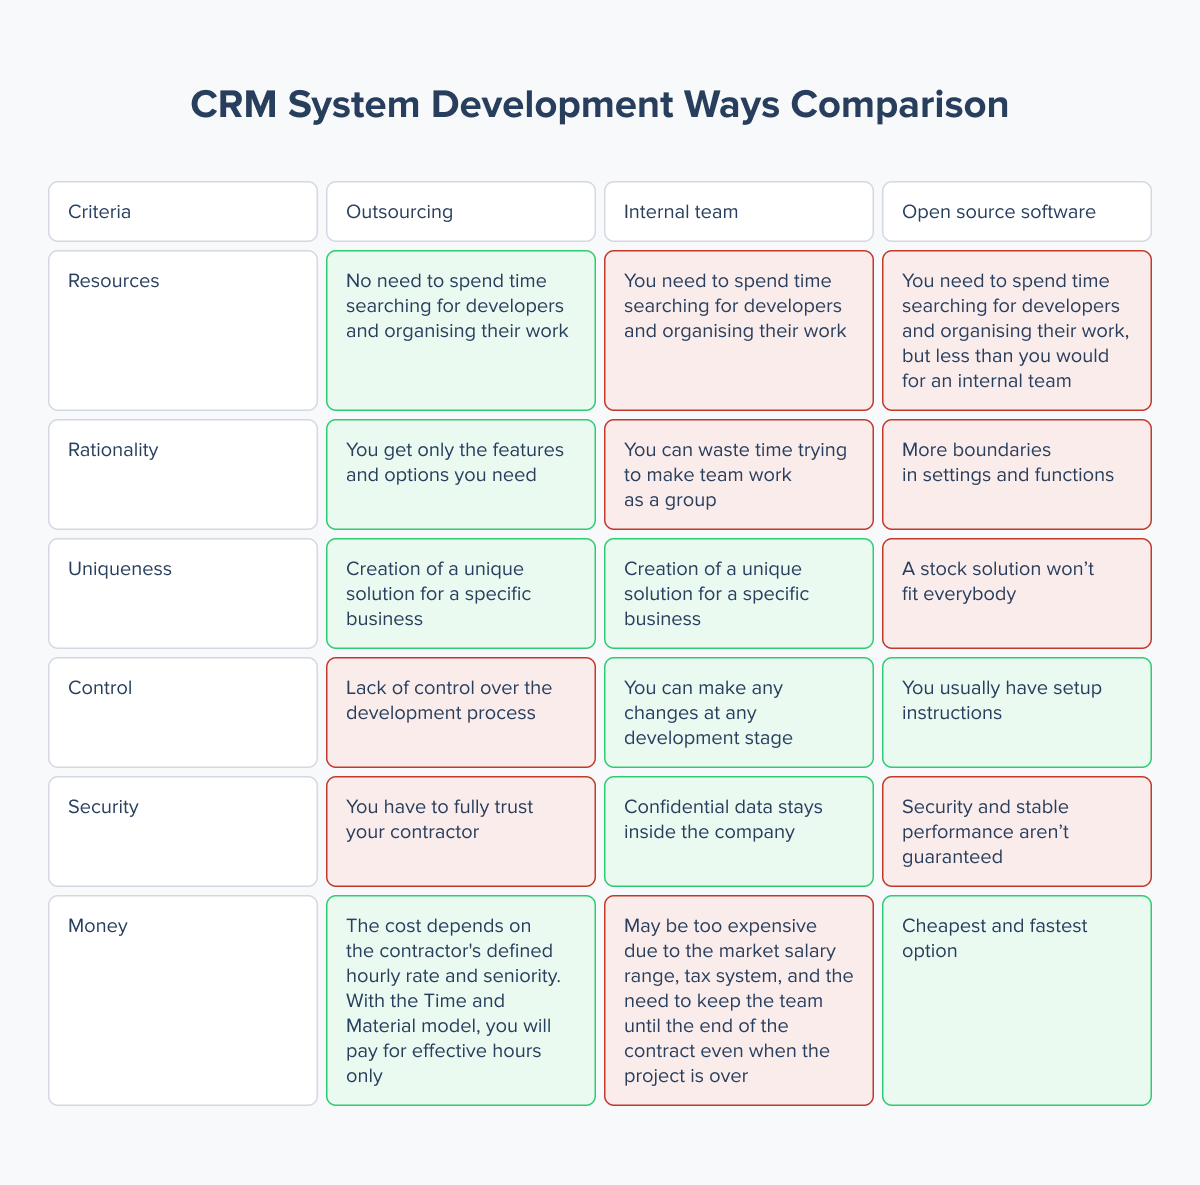 CRM System Development Ways Comparison